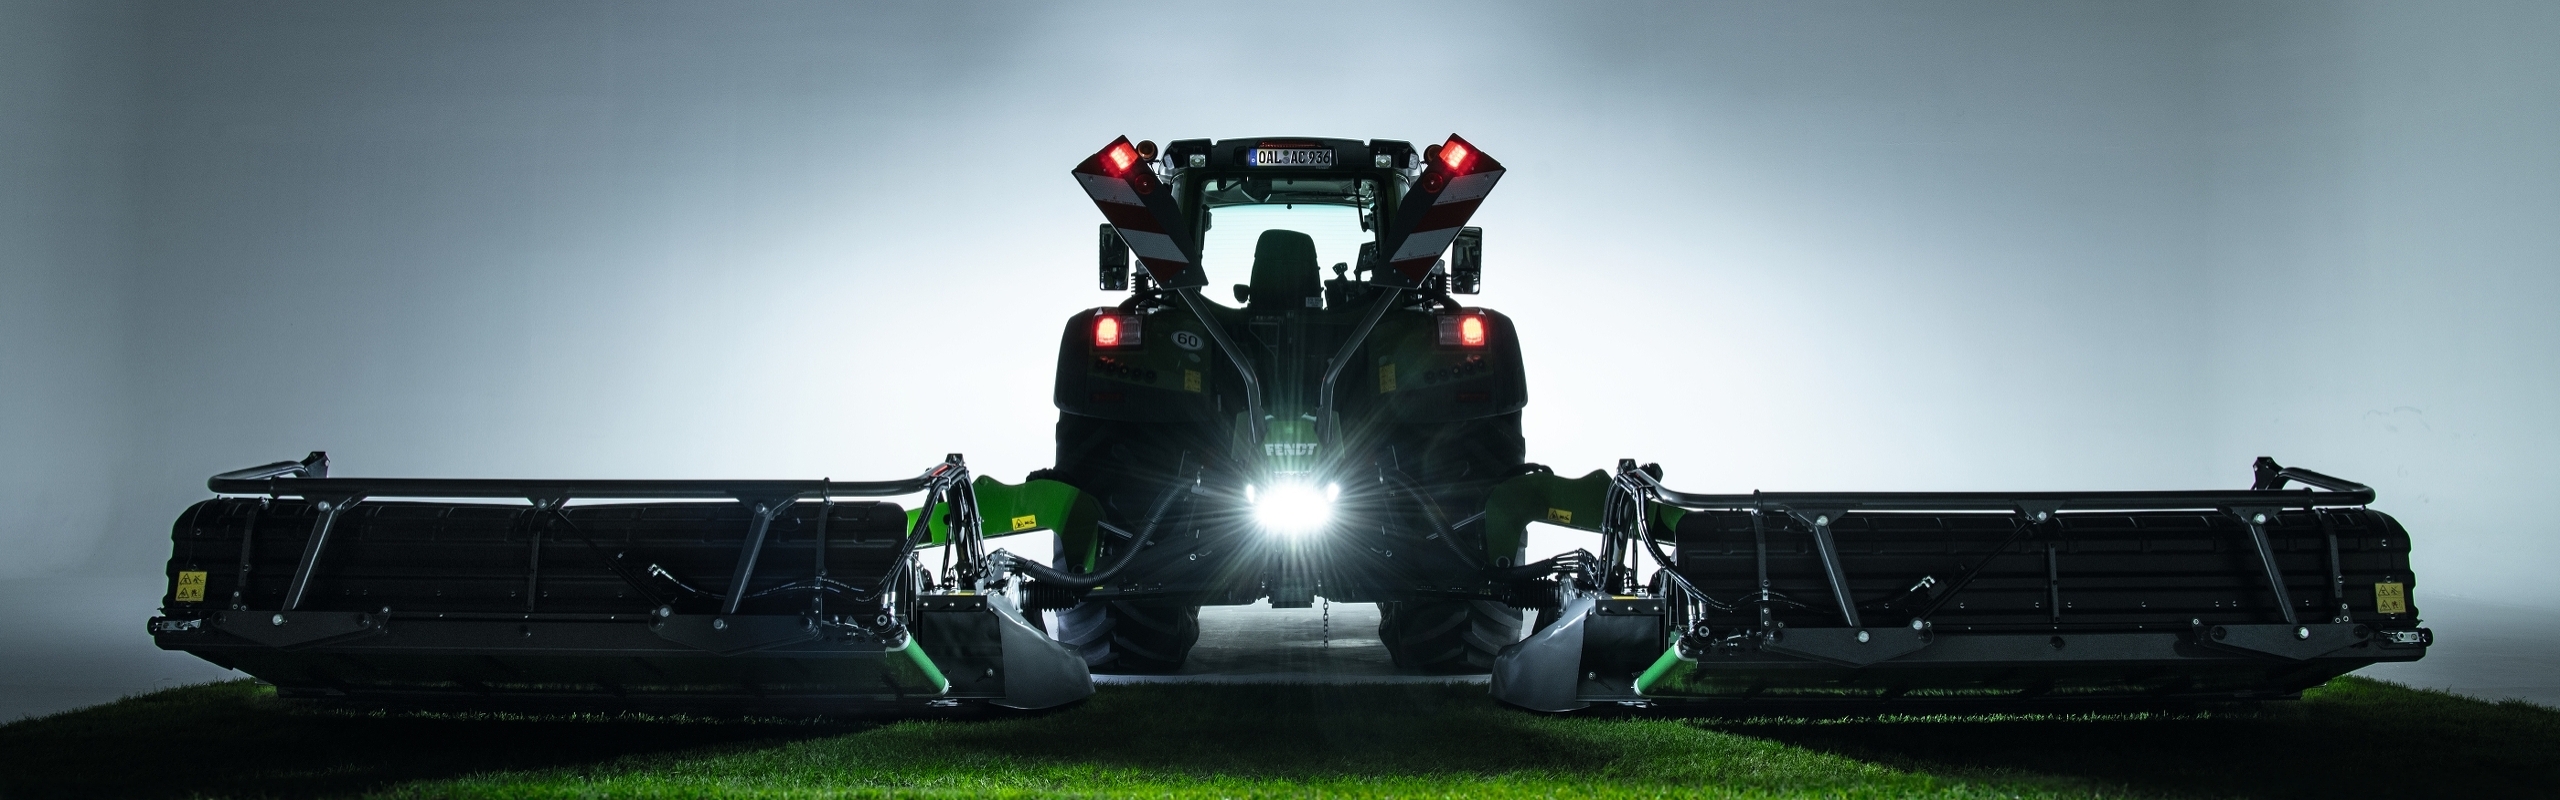 Ein Fendt Traktor steht mit einem Fendt Slicer Scheibenmähwerk in der Abenddämmerung auf einem Feld.